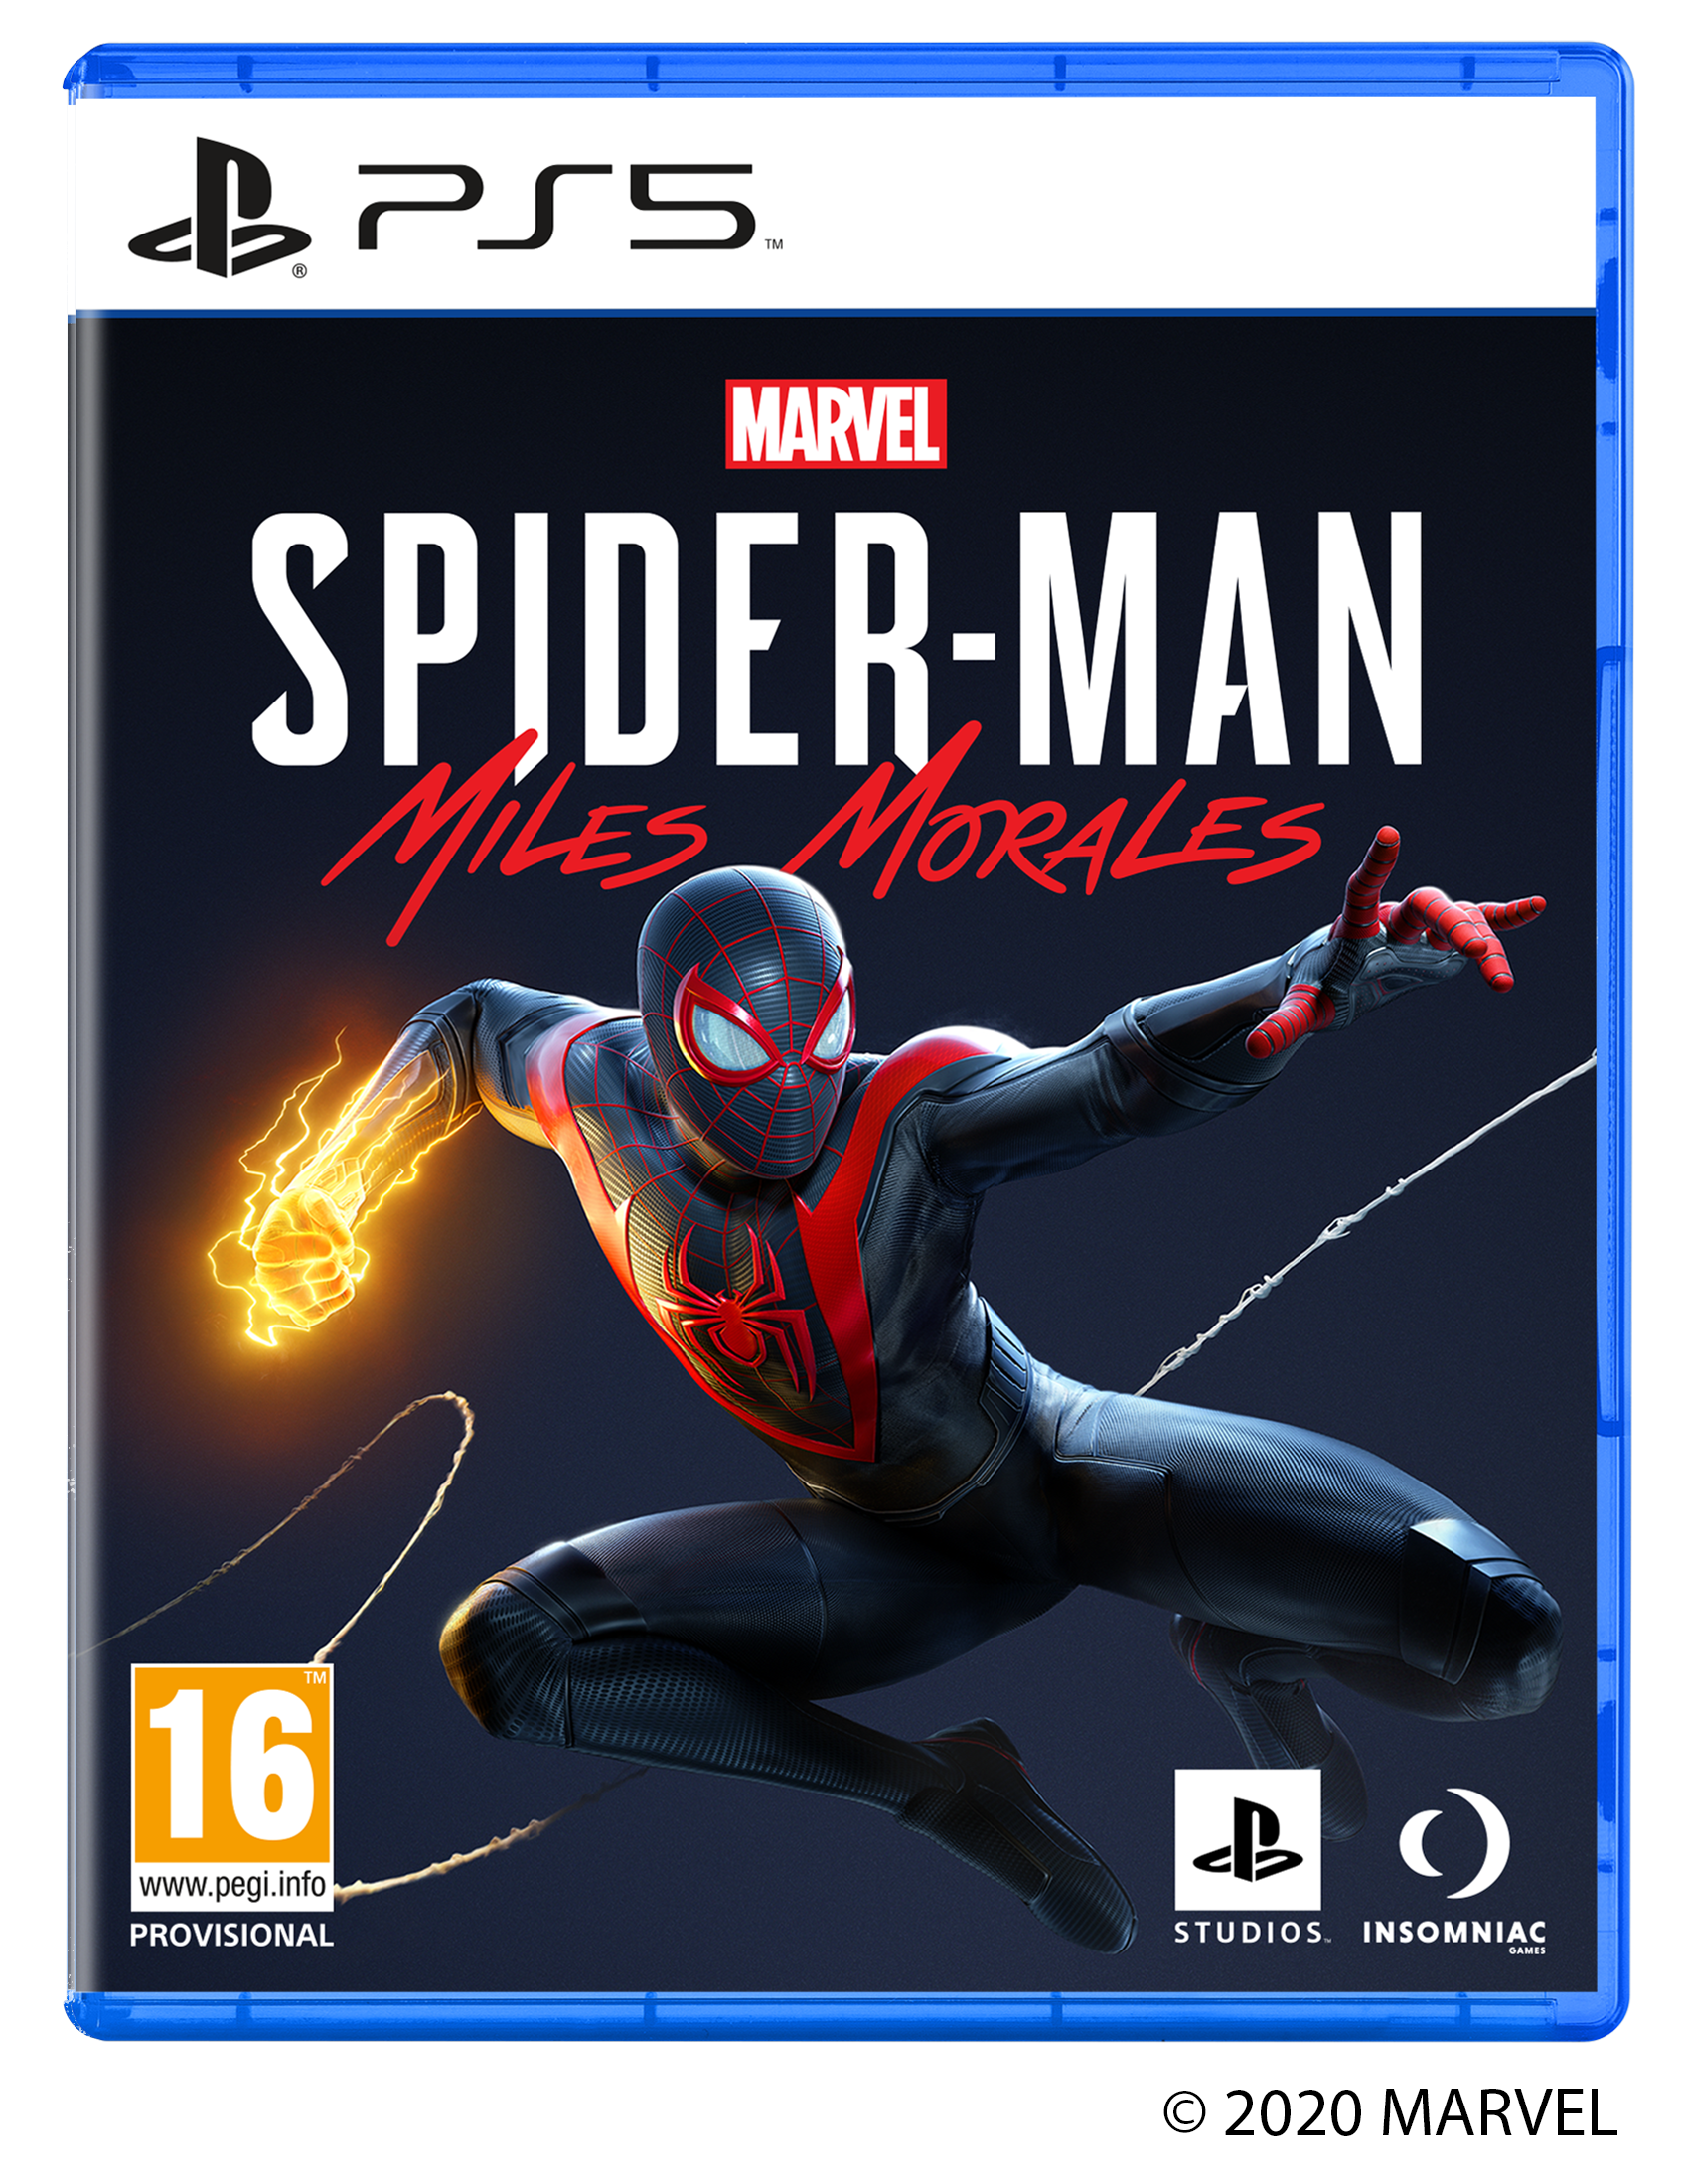  Marvels SpiderMan Miles Morales 